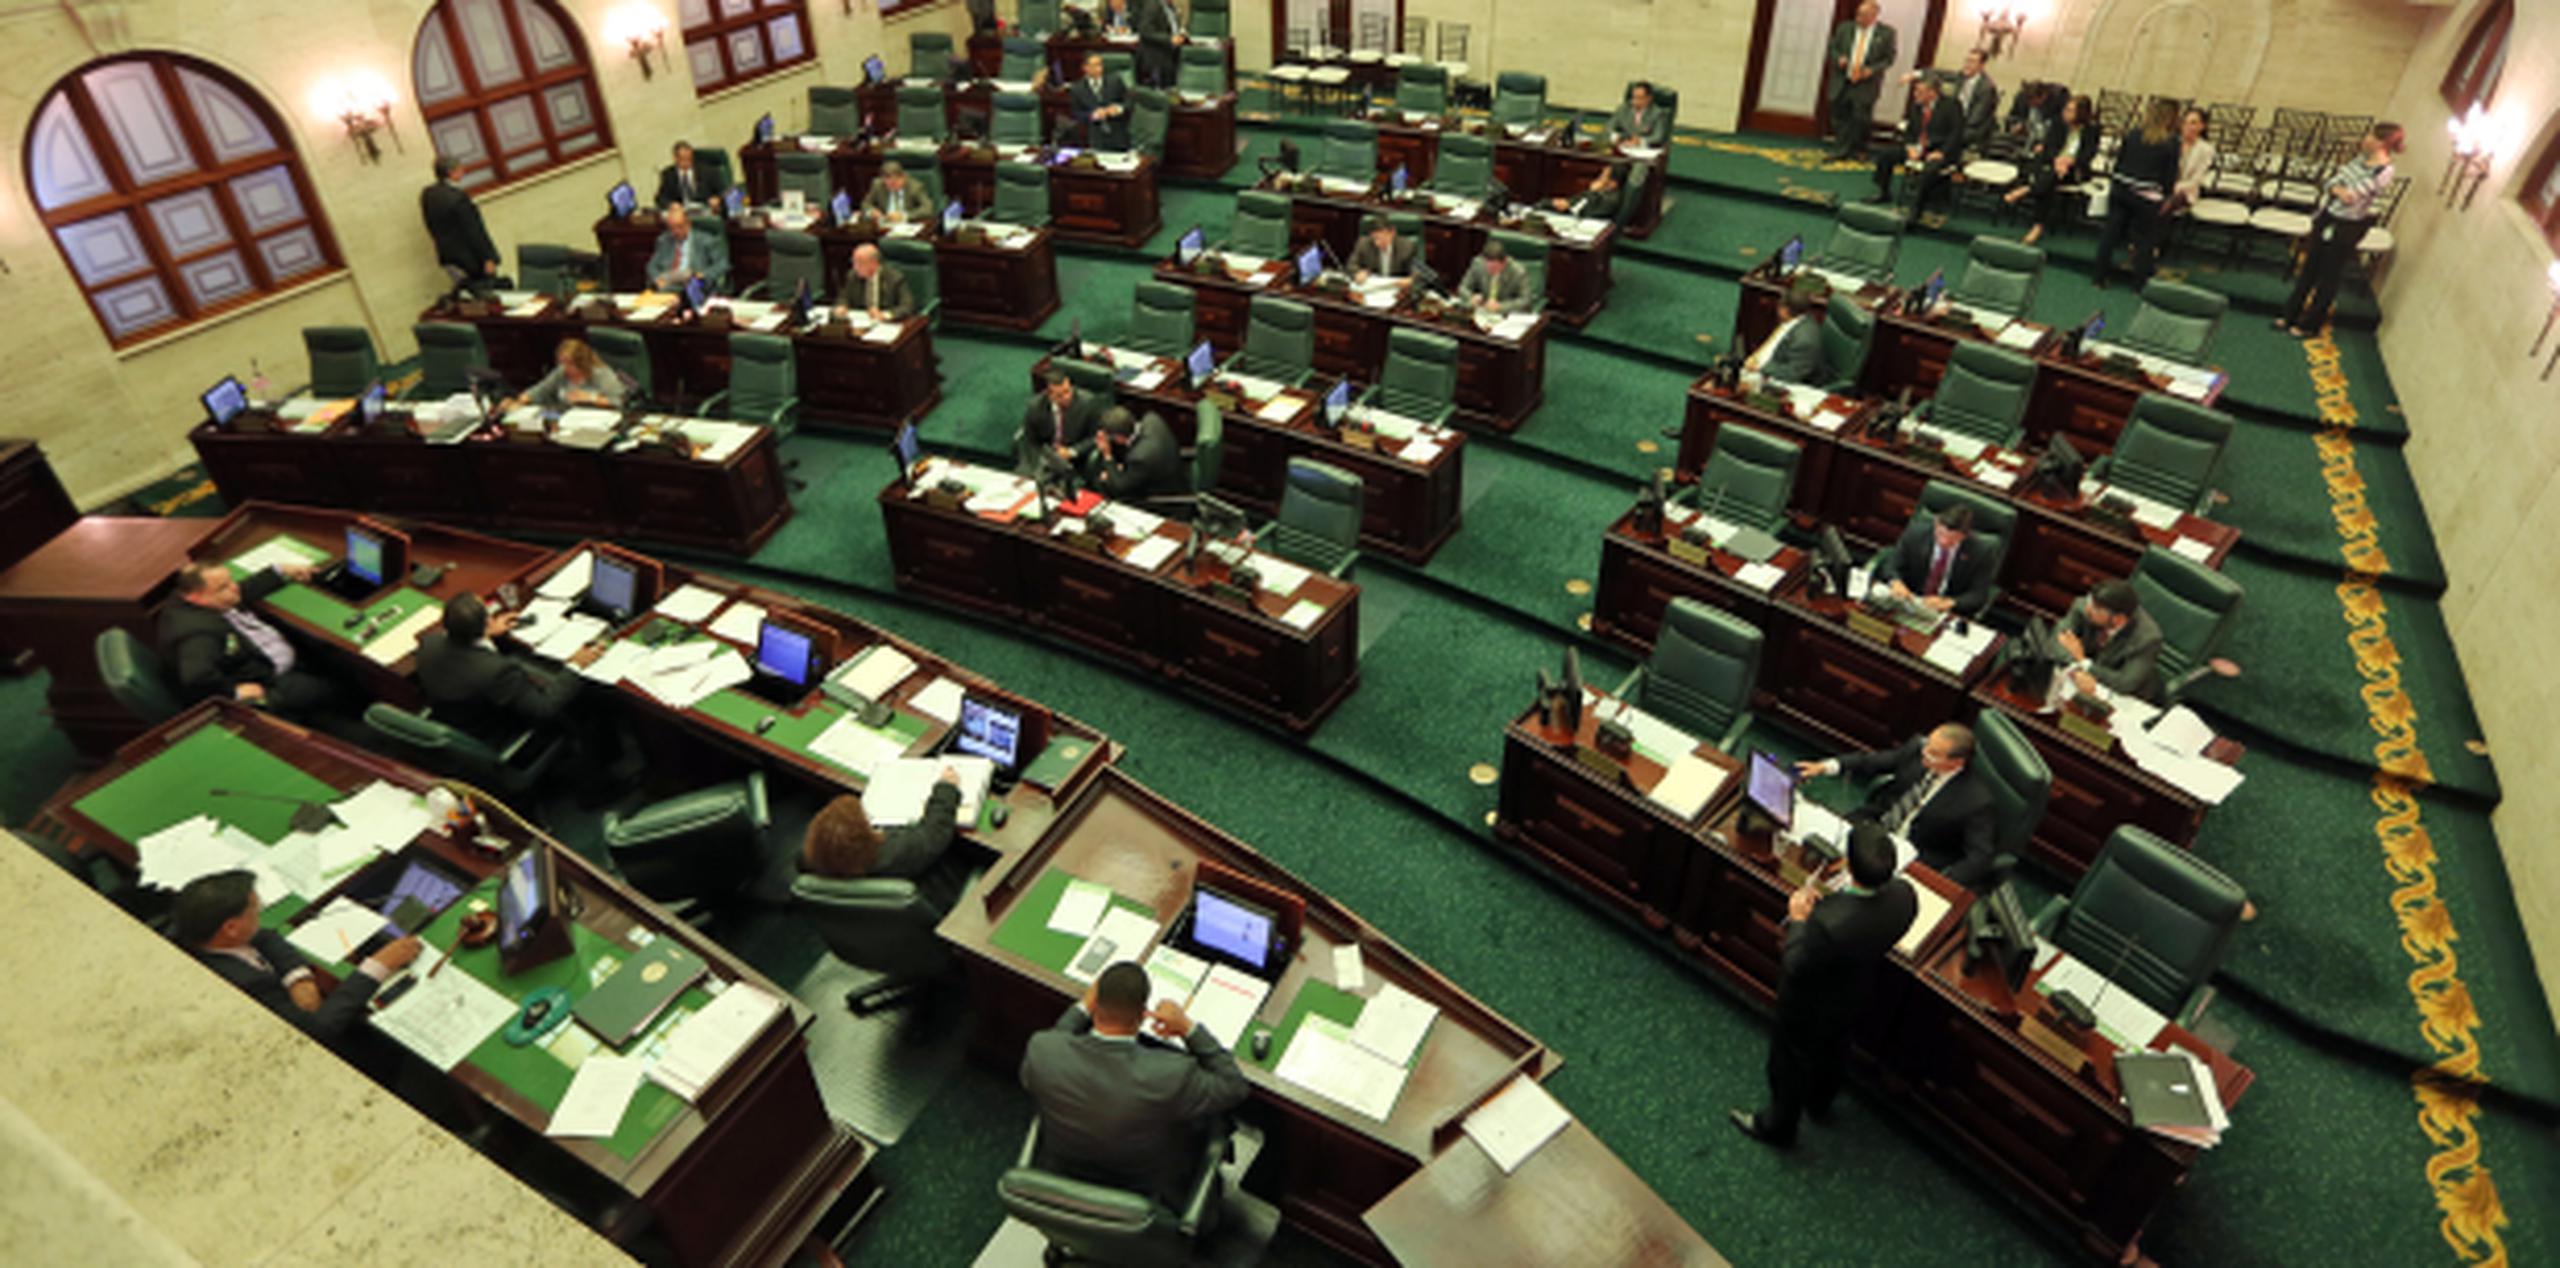 La Cámara de Representantes recesó sus trabajos hasta el domingo. (juan.martinez@gfrmedia.com)